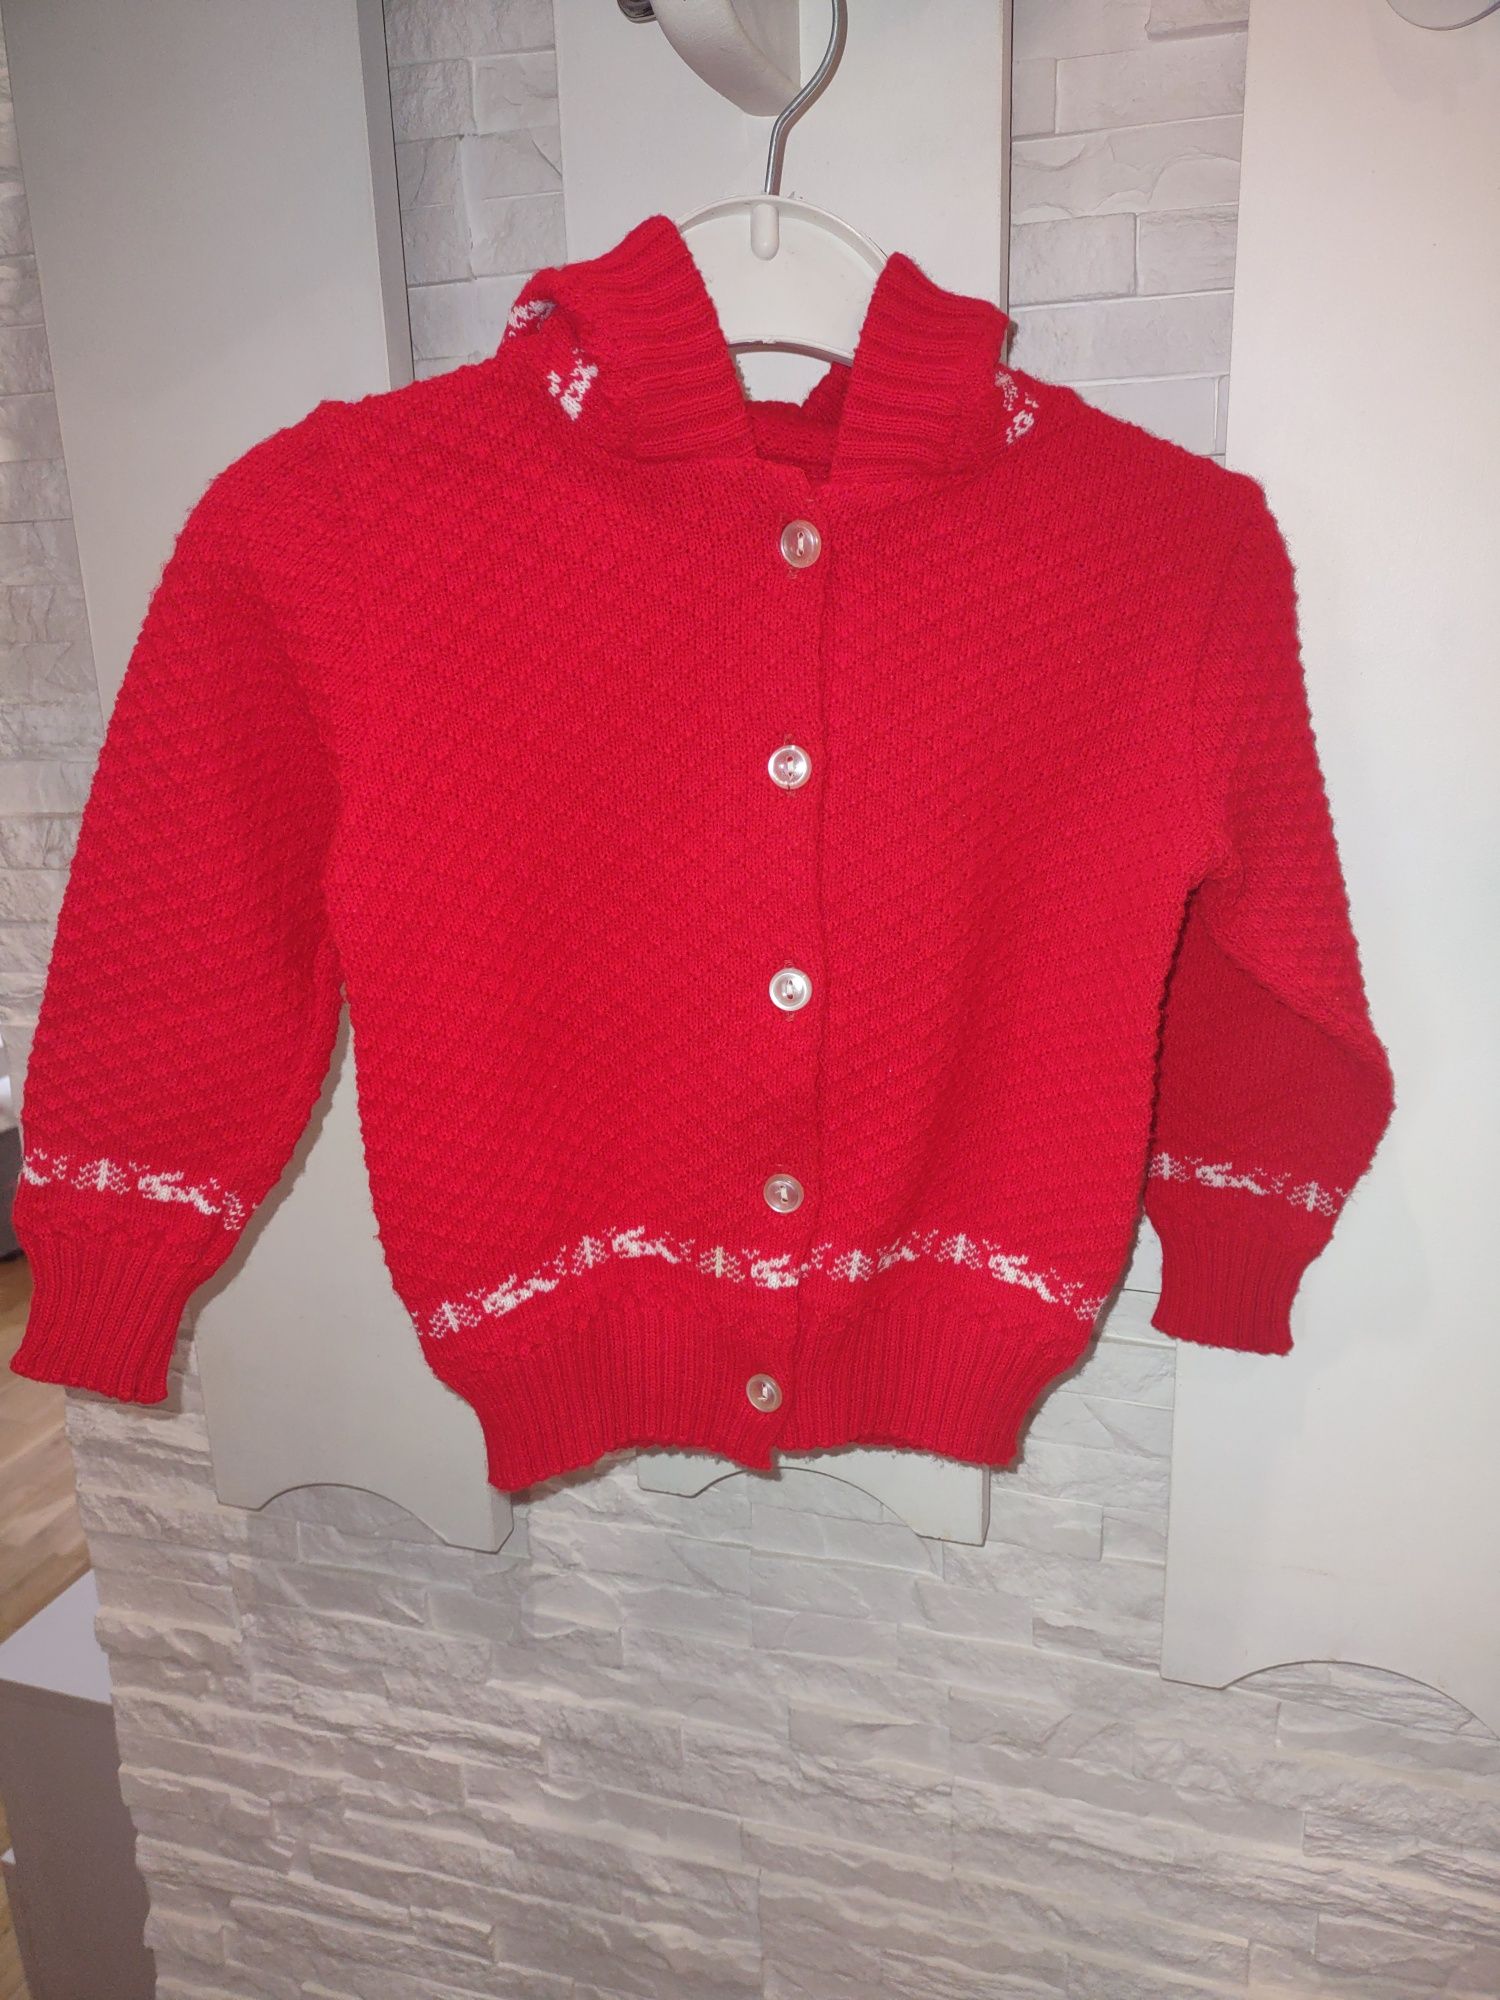 Sweterek czerwony rozpinany z kapturkiem